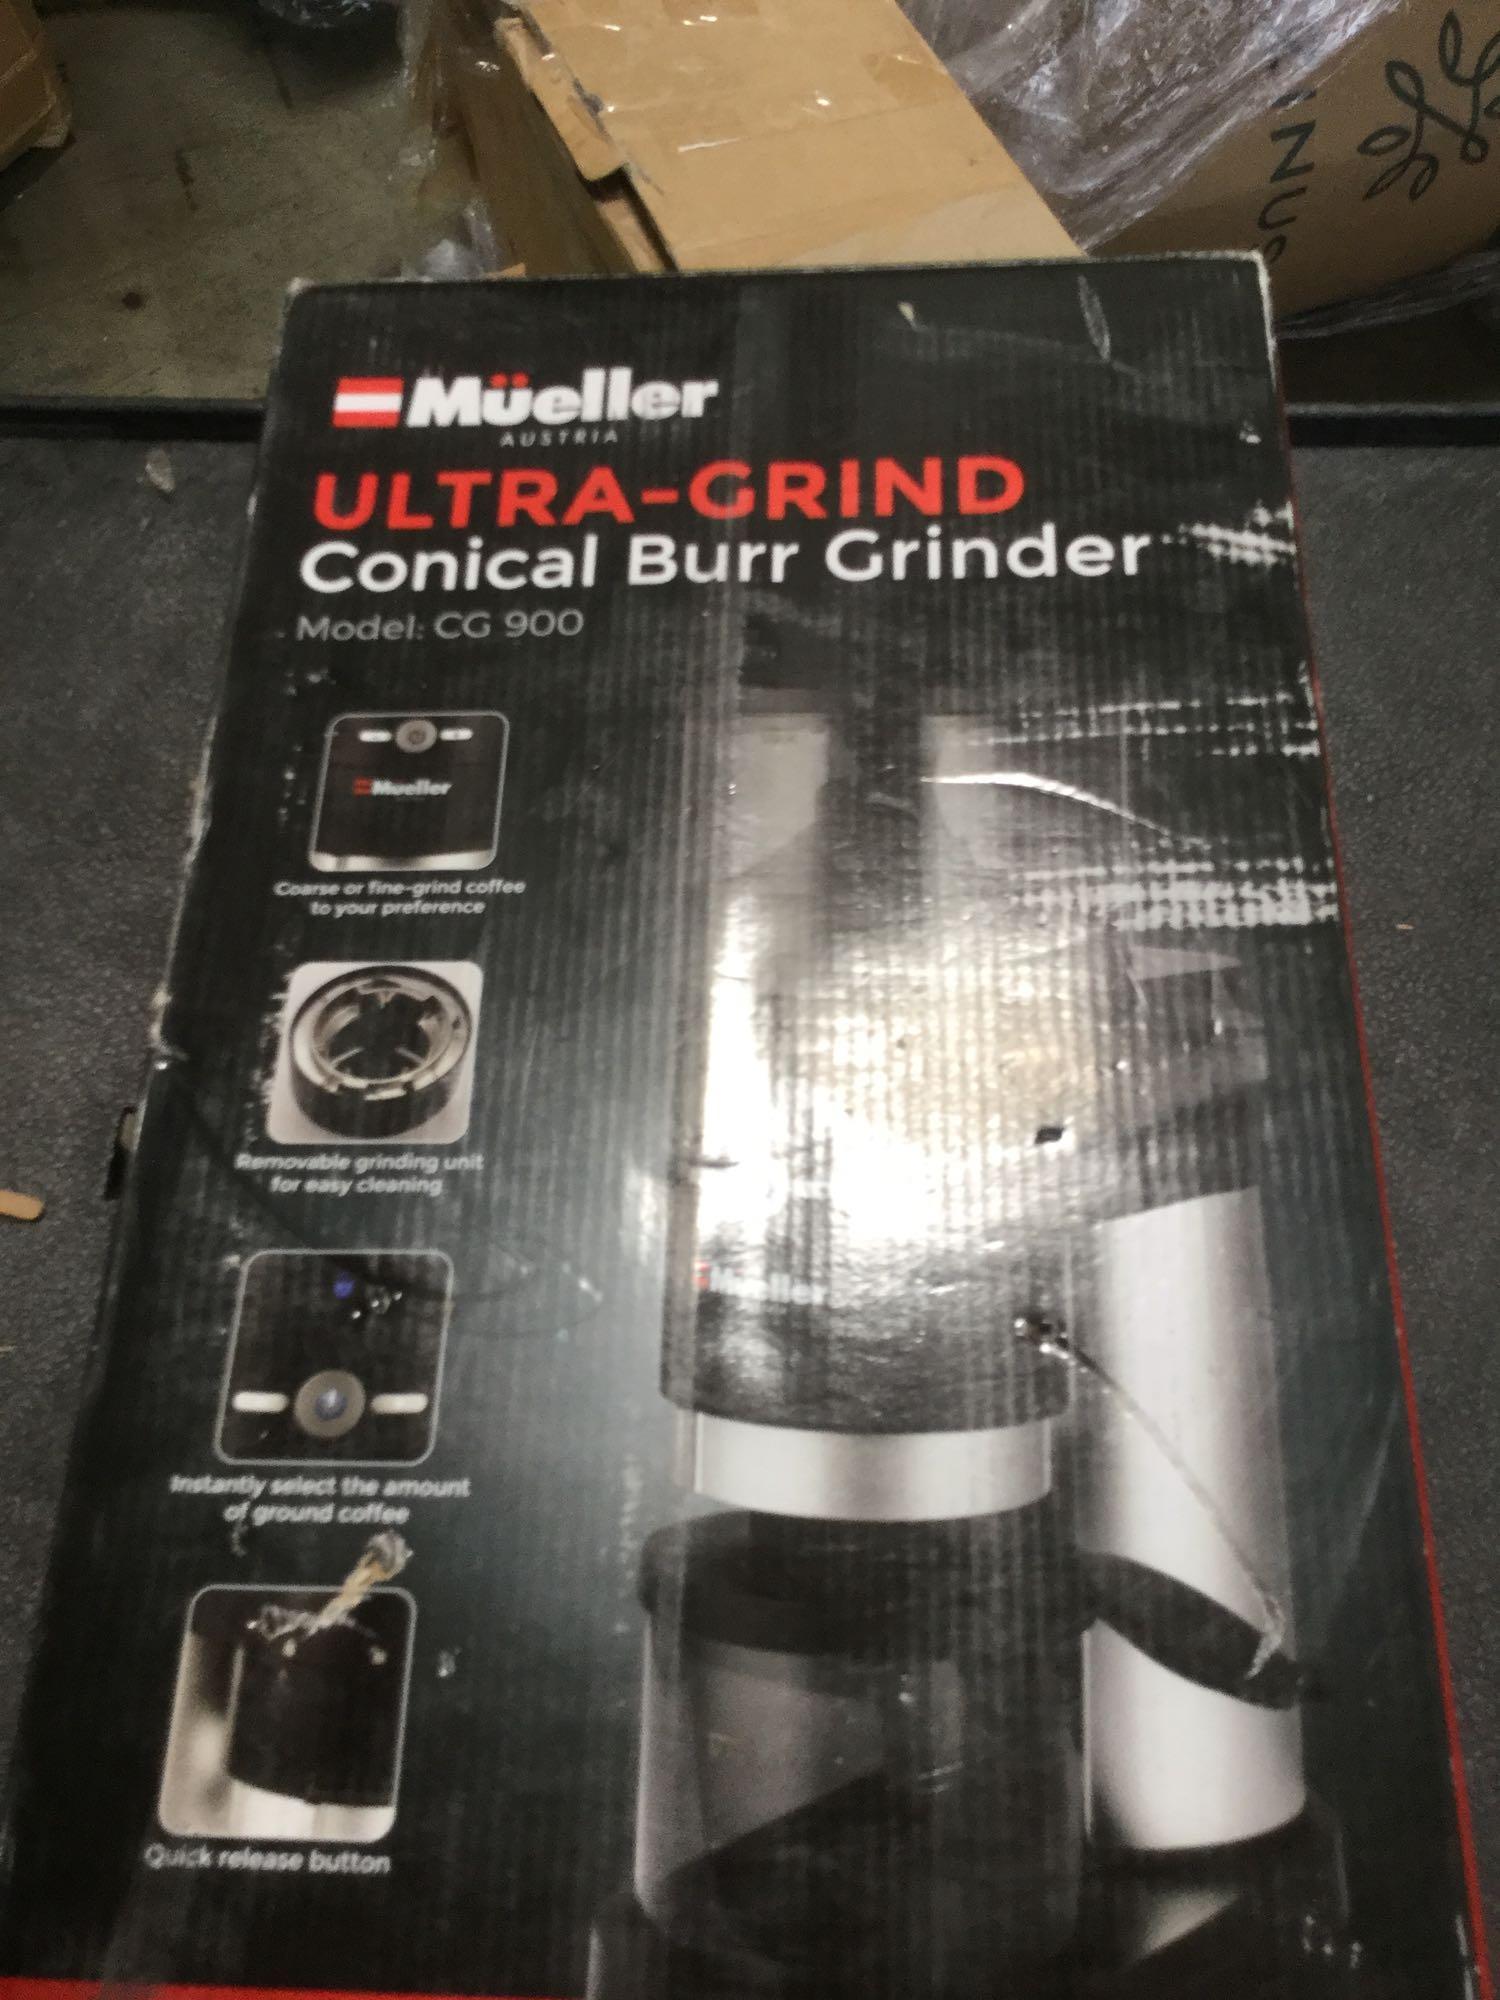 Mueller Ultra-Grind Conical Burr Grinder Professional Series Offer 